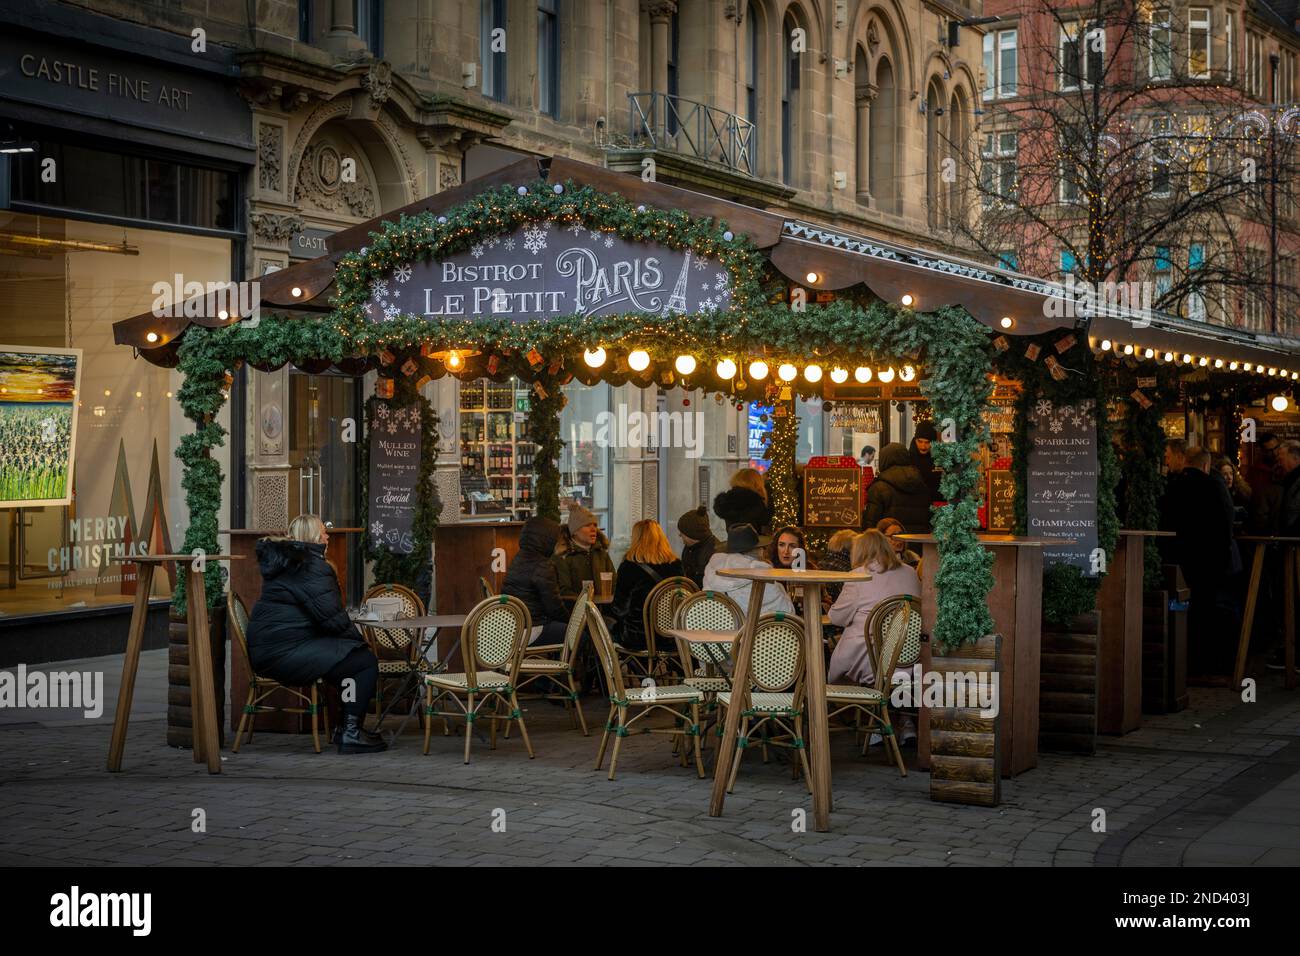 Persone sedute ai tavoli all'esterno dello chalet di legno del Bistrot le Petit Paris, parte dei mercatini di Natale di Manchester. REGNO UNITO Foto Stock